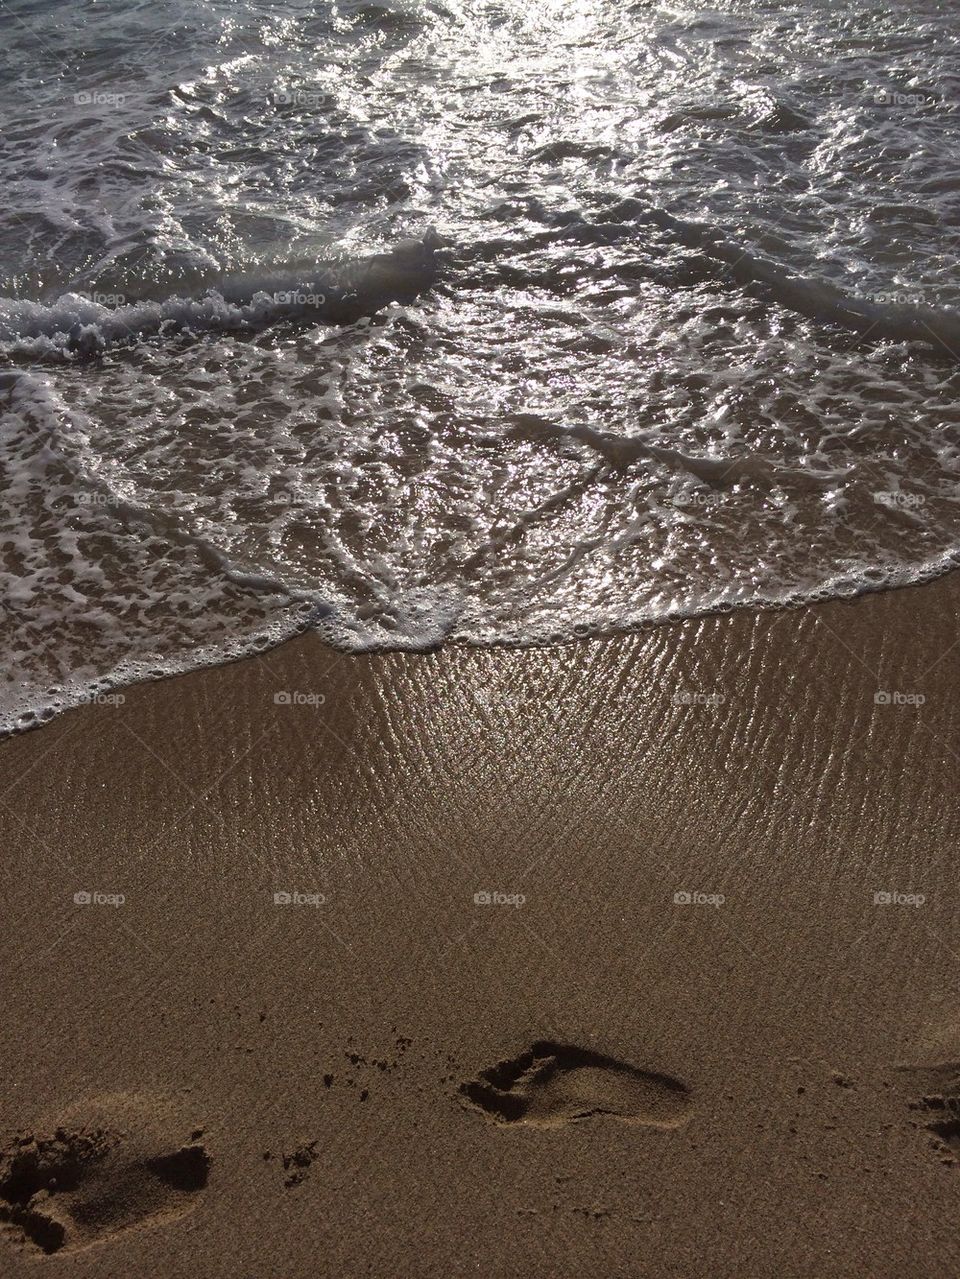 Footprints on beach in the Hawaii